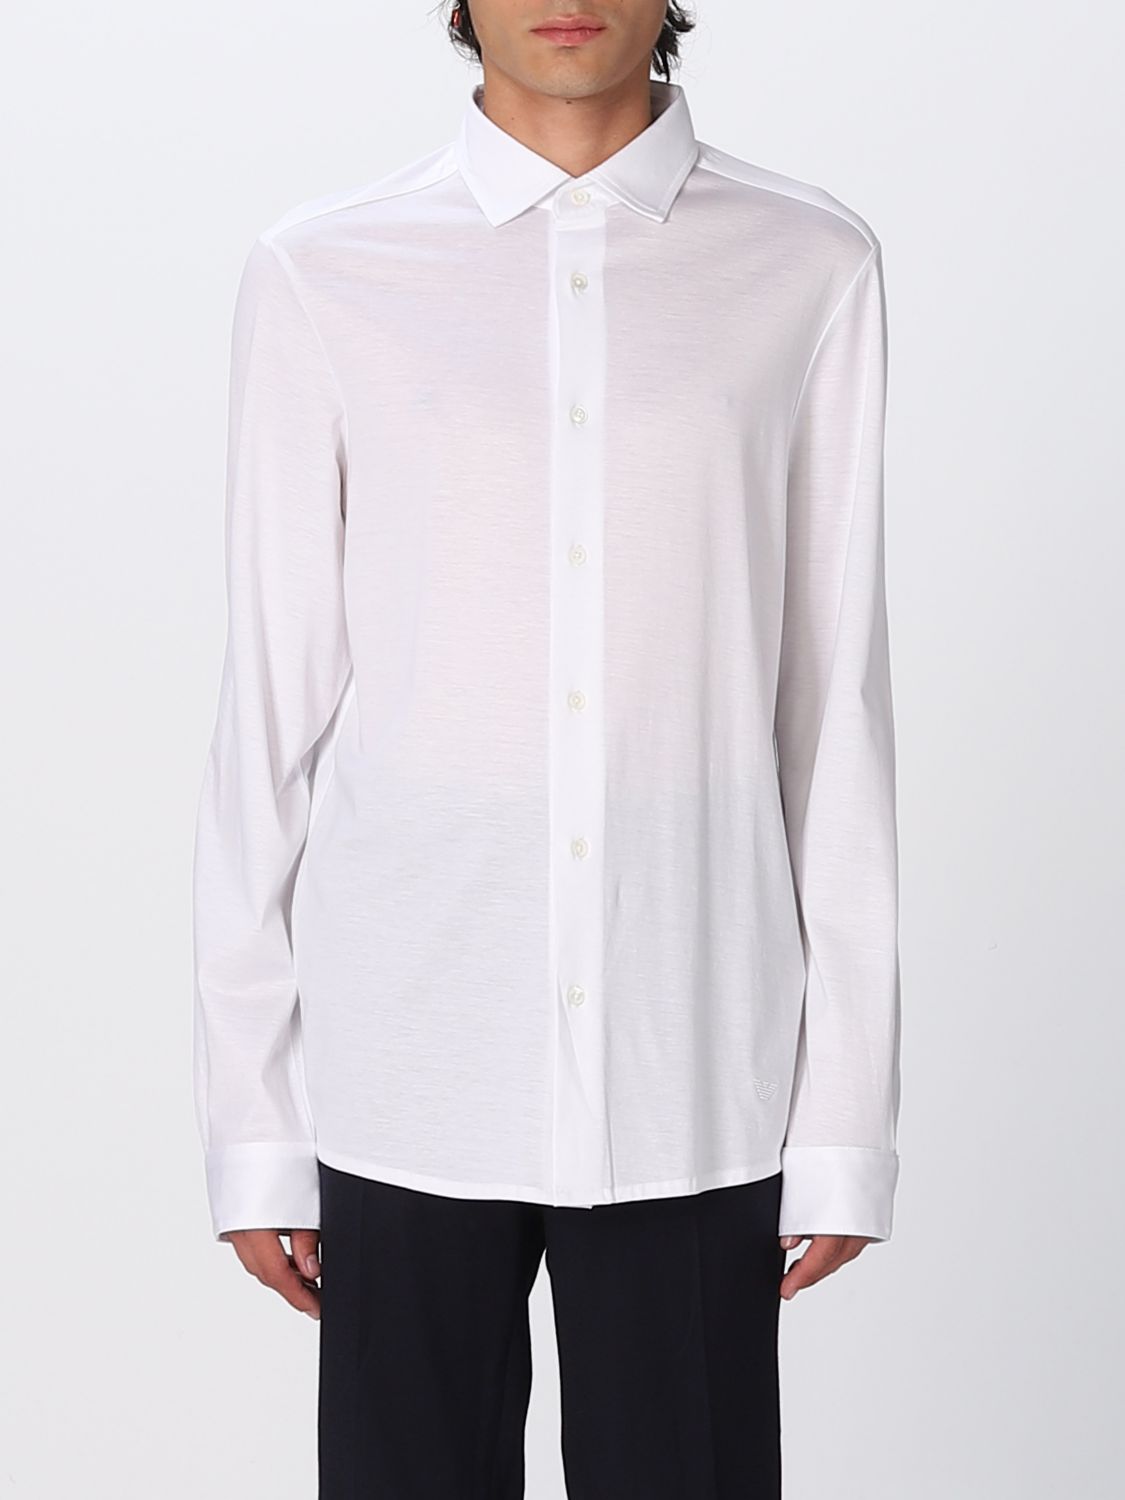 EMPORIO ARMANI: shirt for man - White | Emporio Armani shirt ...